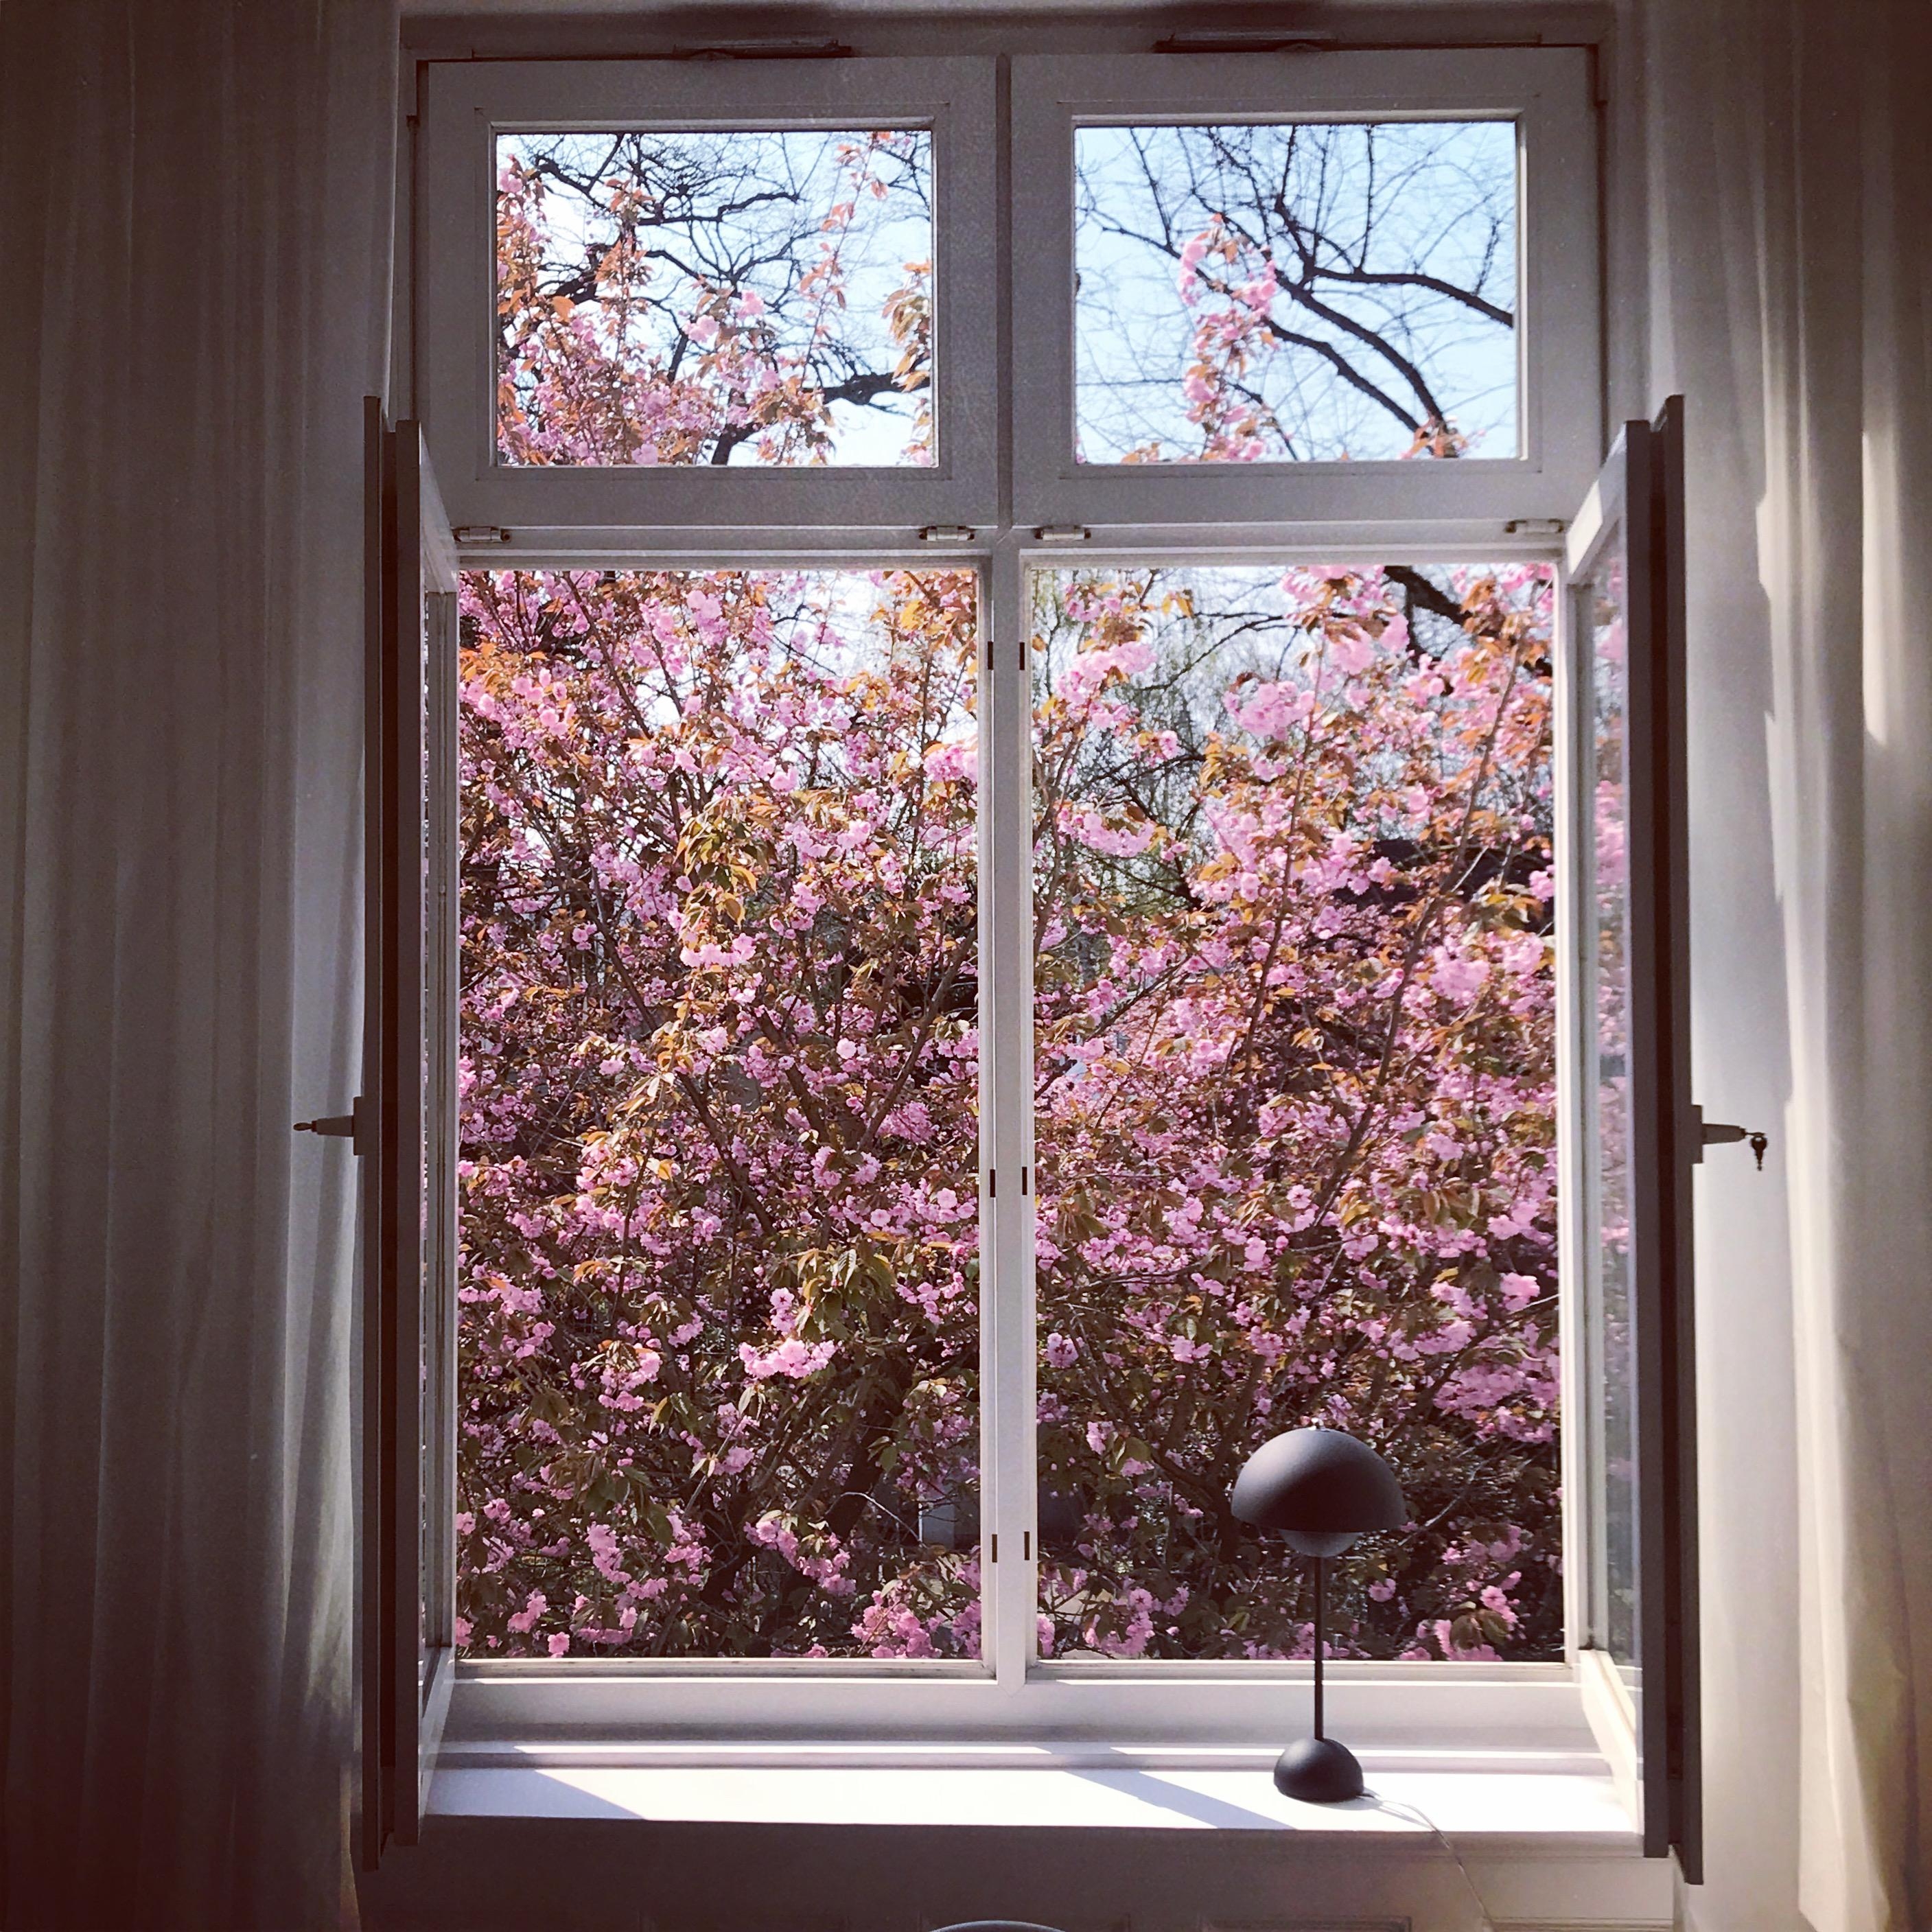 Schade, dass die Zeit der #kirschblüte  so kurz ist. #fenster #living #ausblick #wohnen #scandiliving #nordicliving